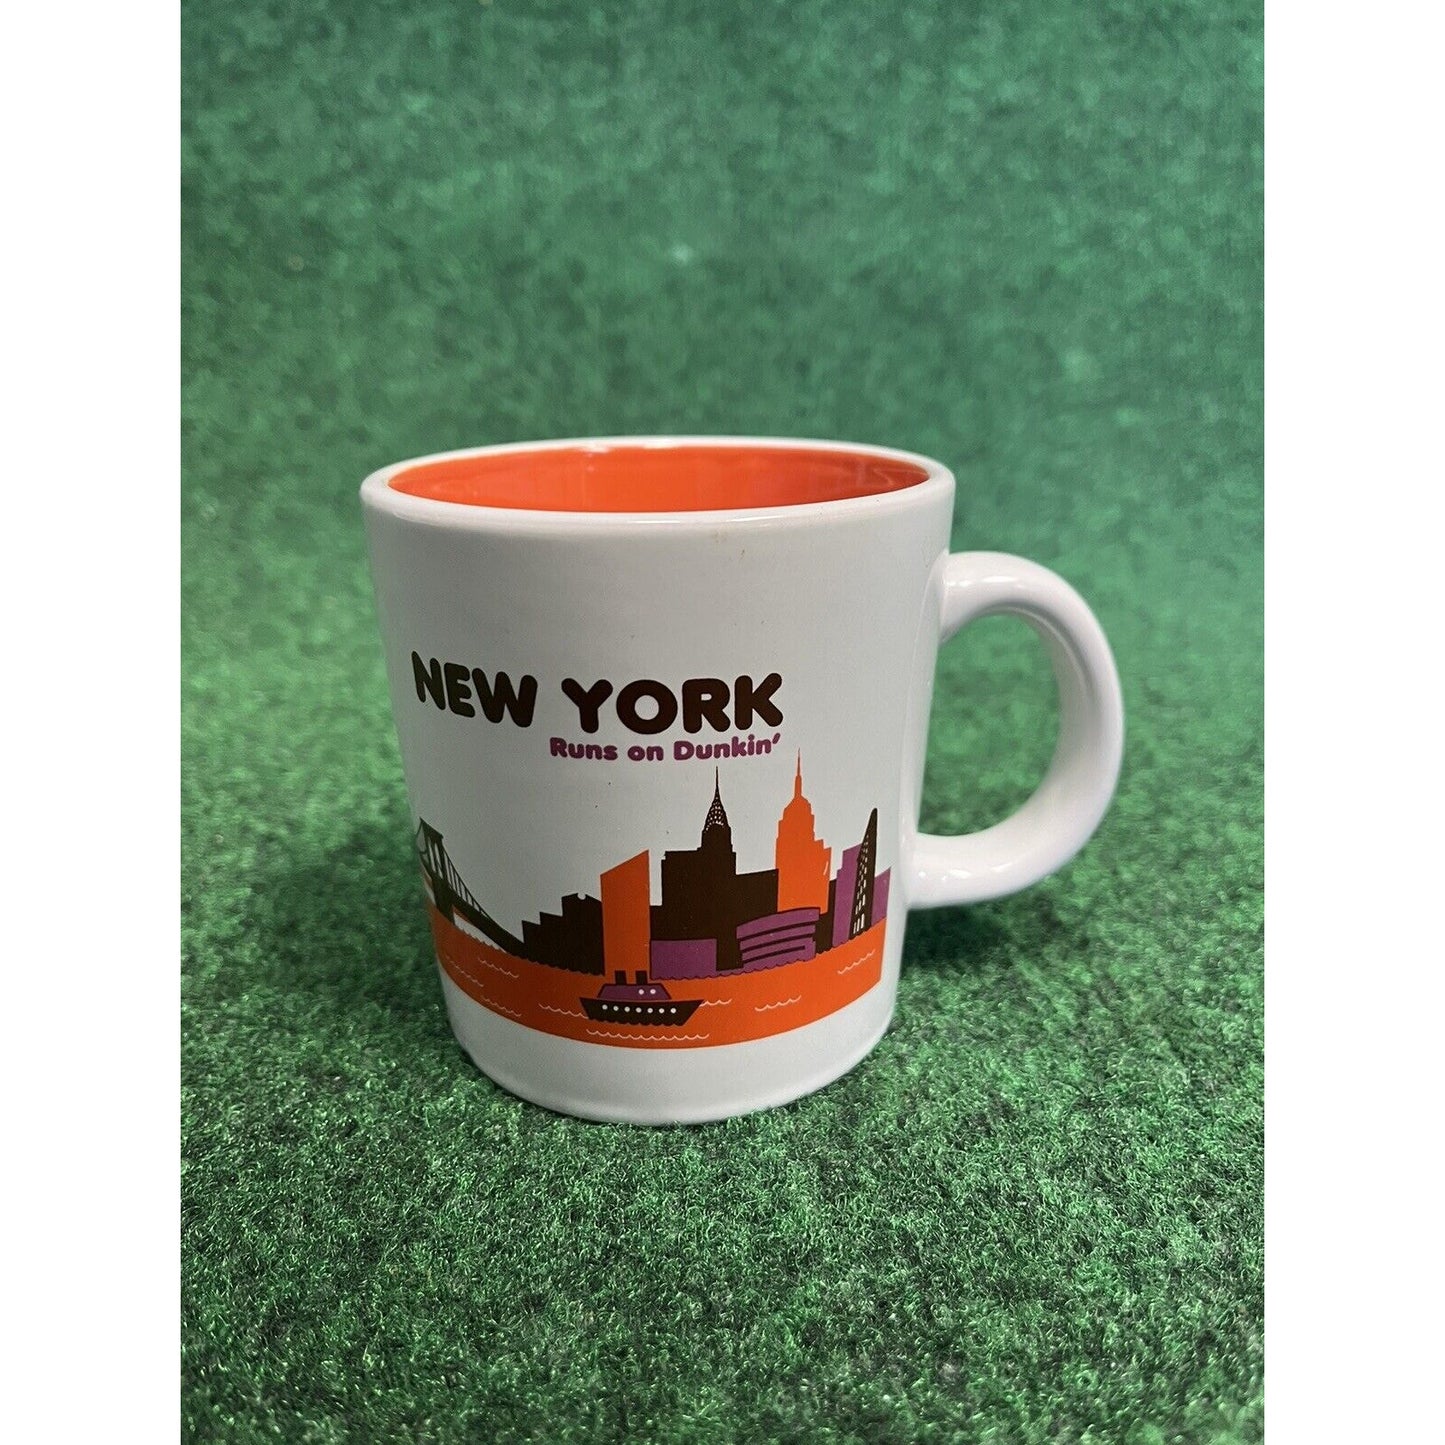 Dunkin Donuts Coffee Cup Mug New York Runs on Dunkin 2012